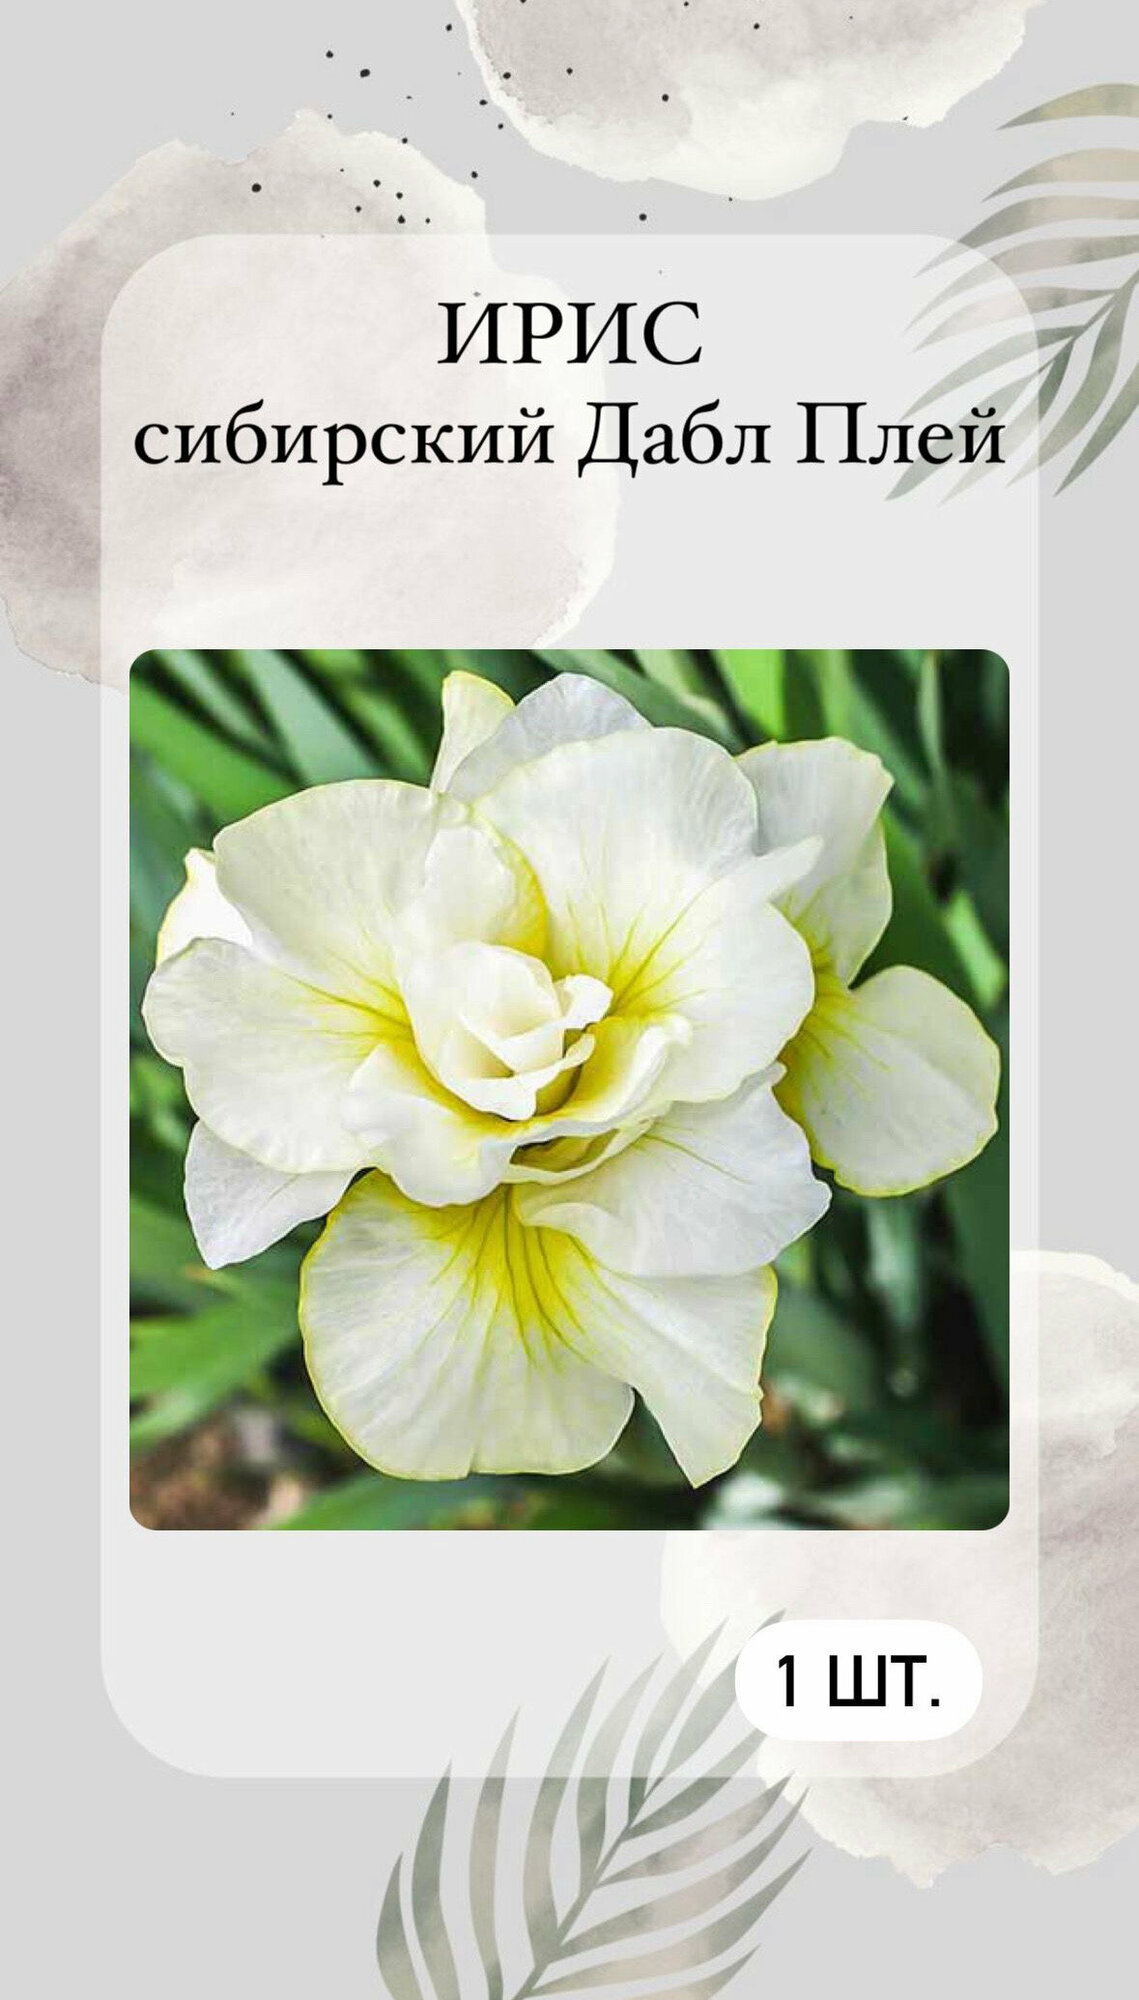 Ирис корневой Дабл Плей, многолетние цветы 1 шт